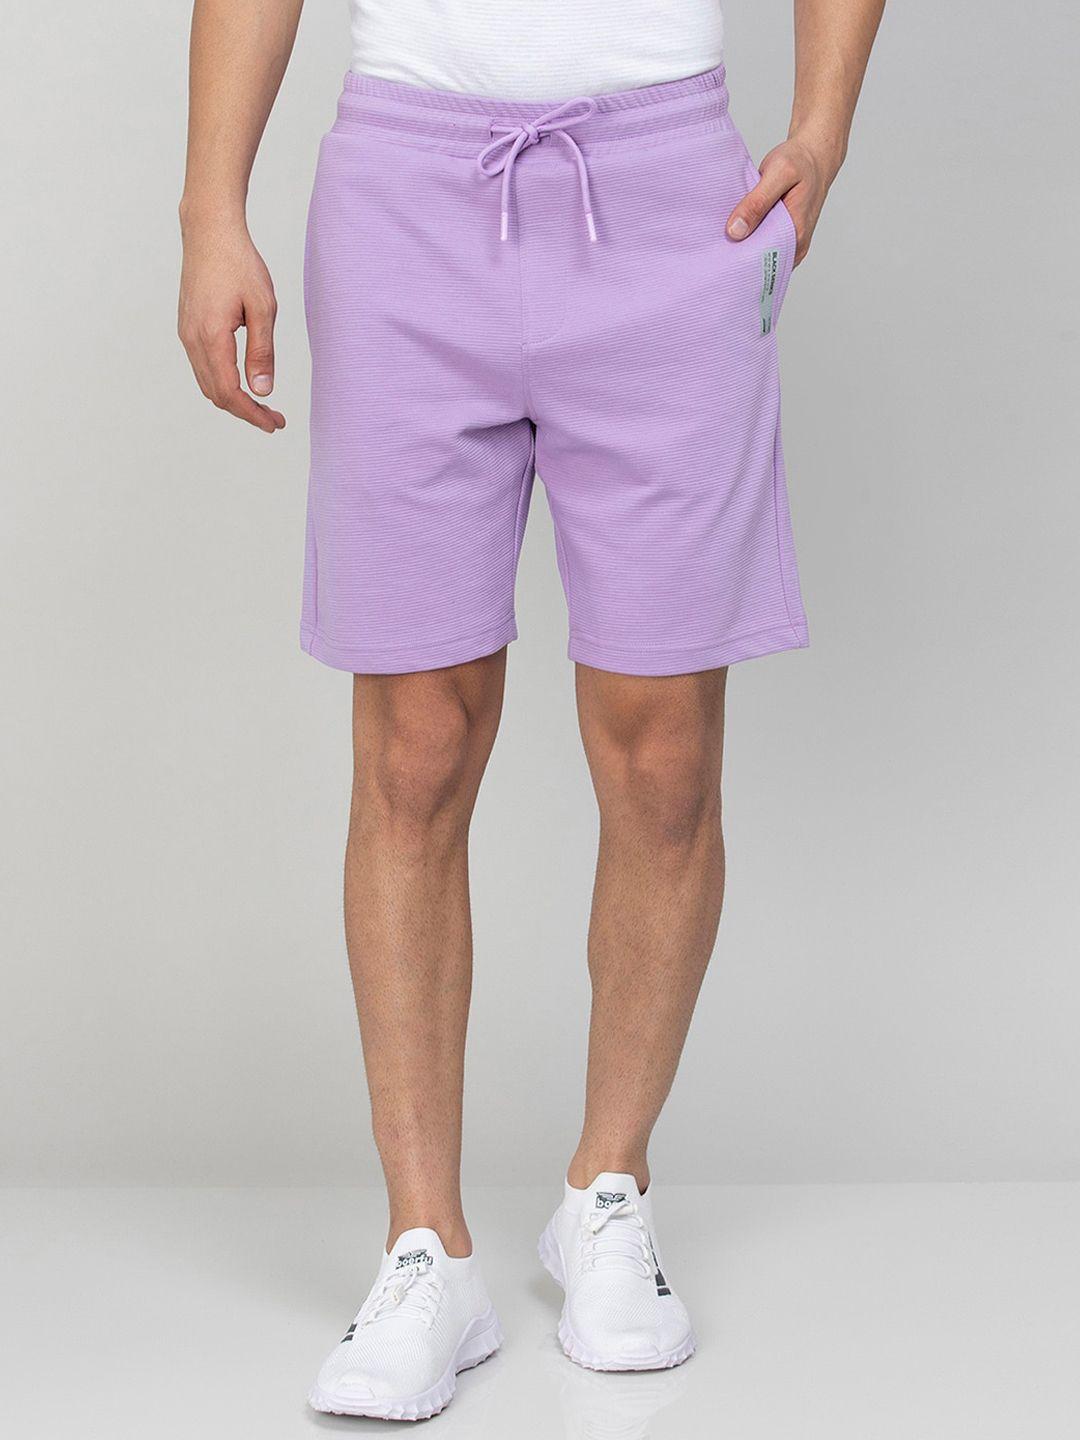 bossini men cotton mid-rise shorts